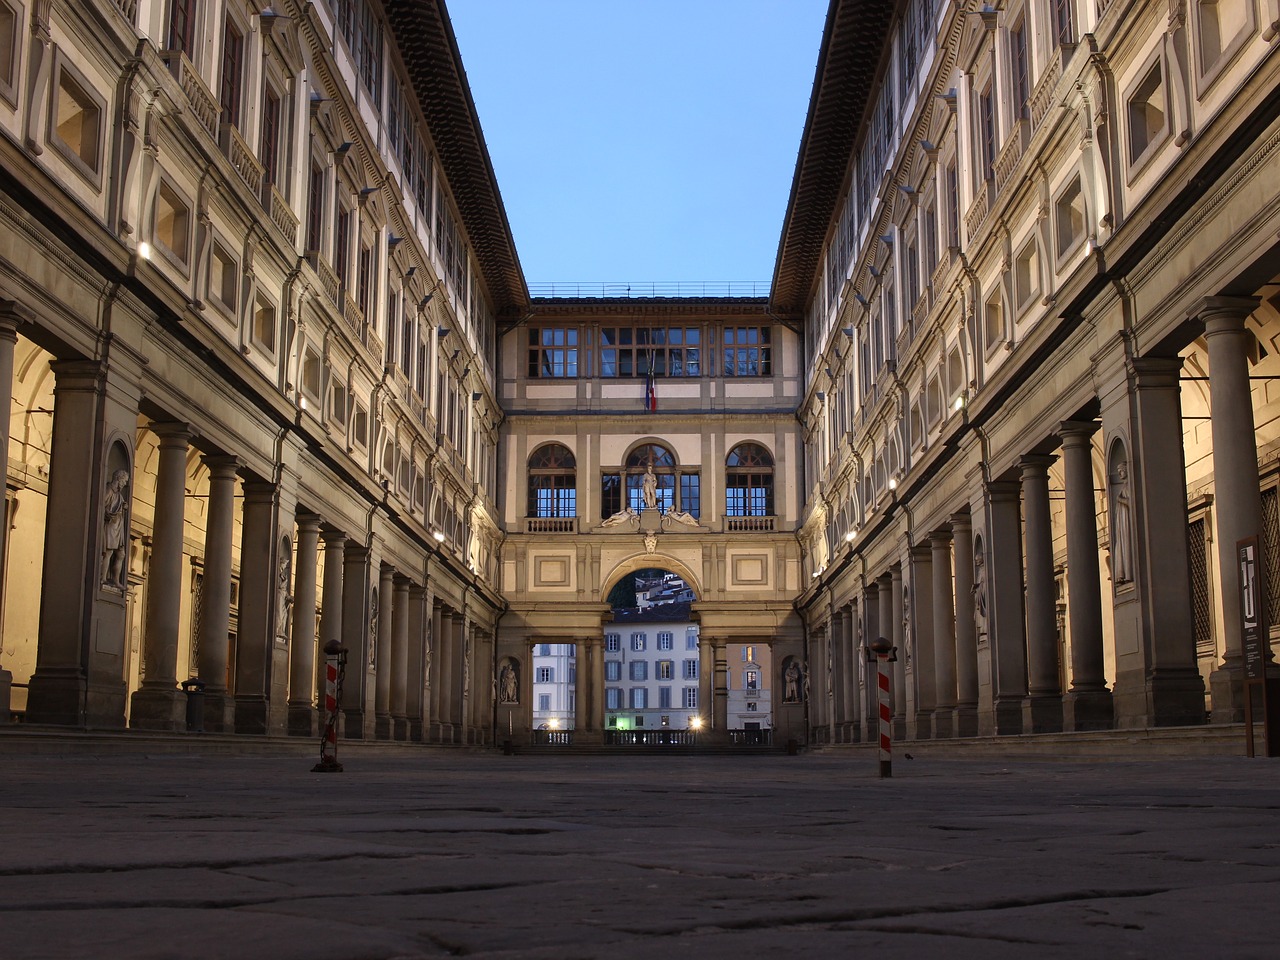 Uffizi - Firenze